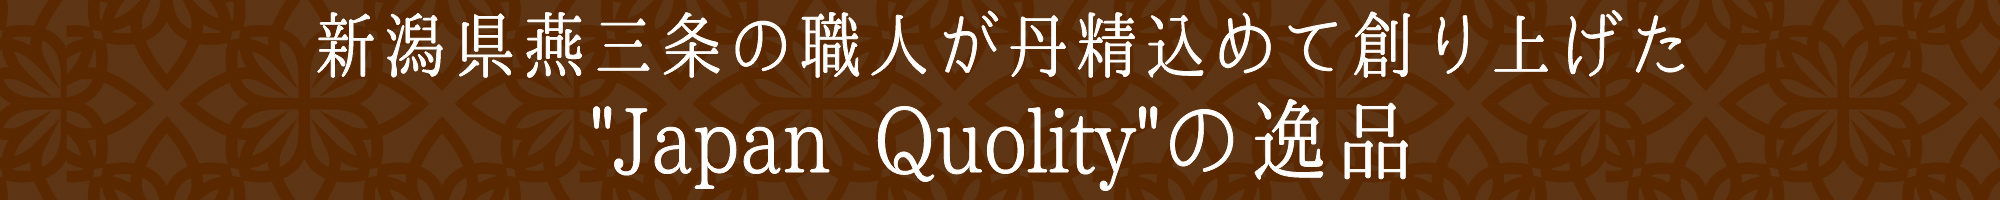 新潟燕三条の職人が丹精込めて作り上げた”Japan Quality”の逸品